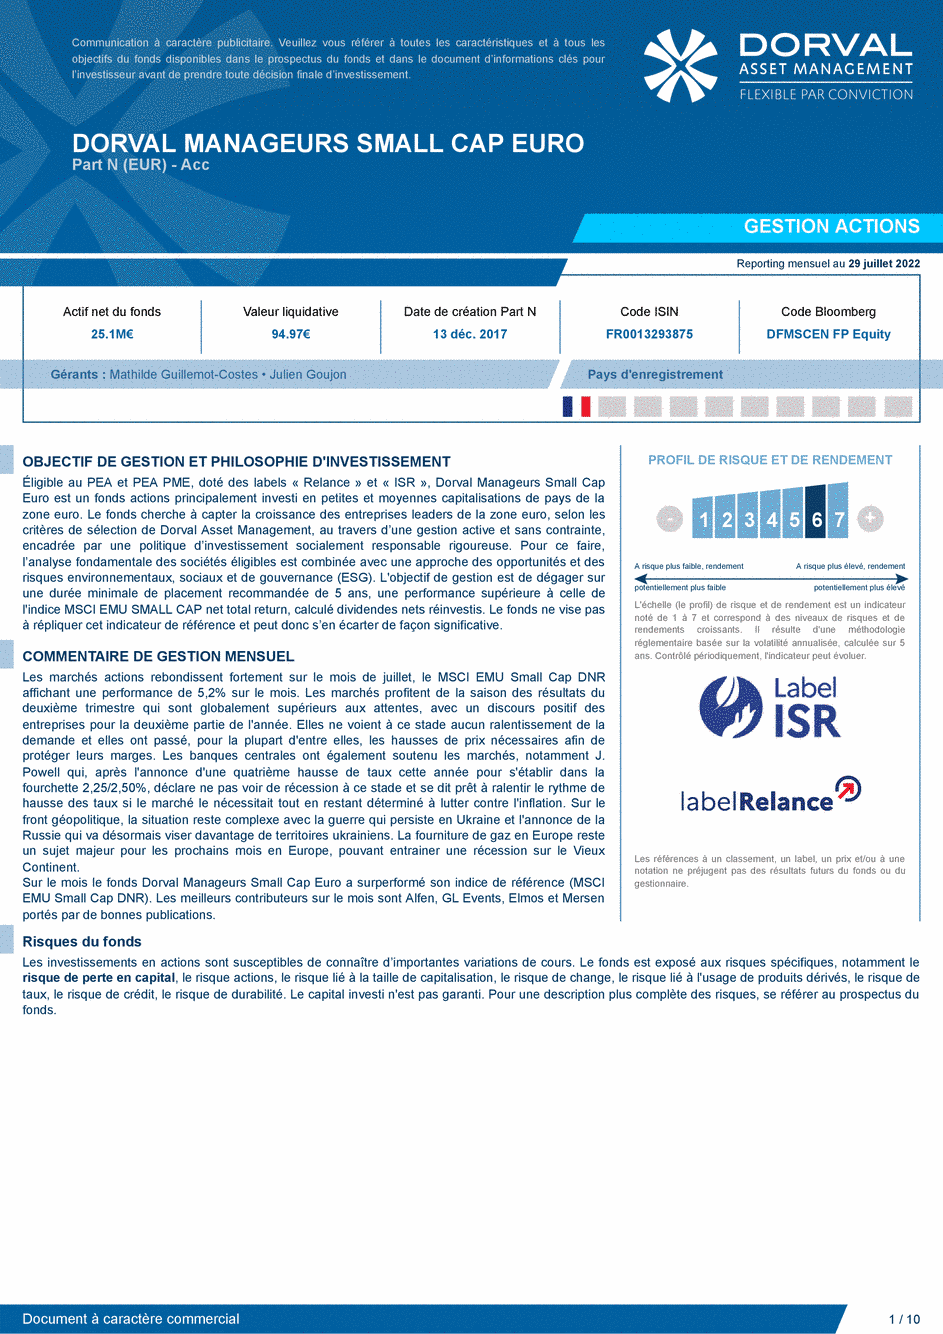 Reporting DORVAL MANAGEURS SMALL CAP EURO N - 29/07/2022 - Français